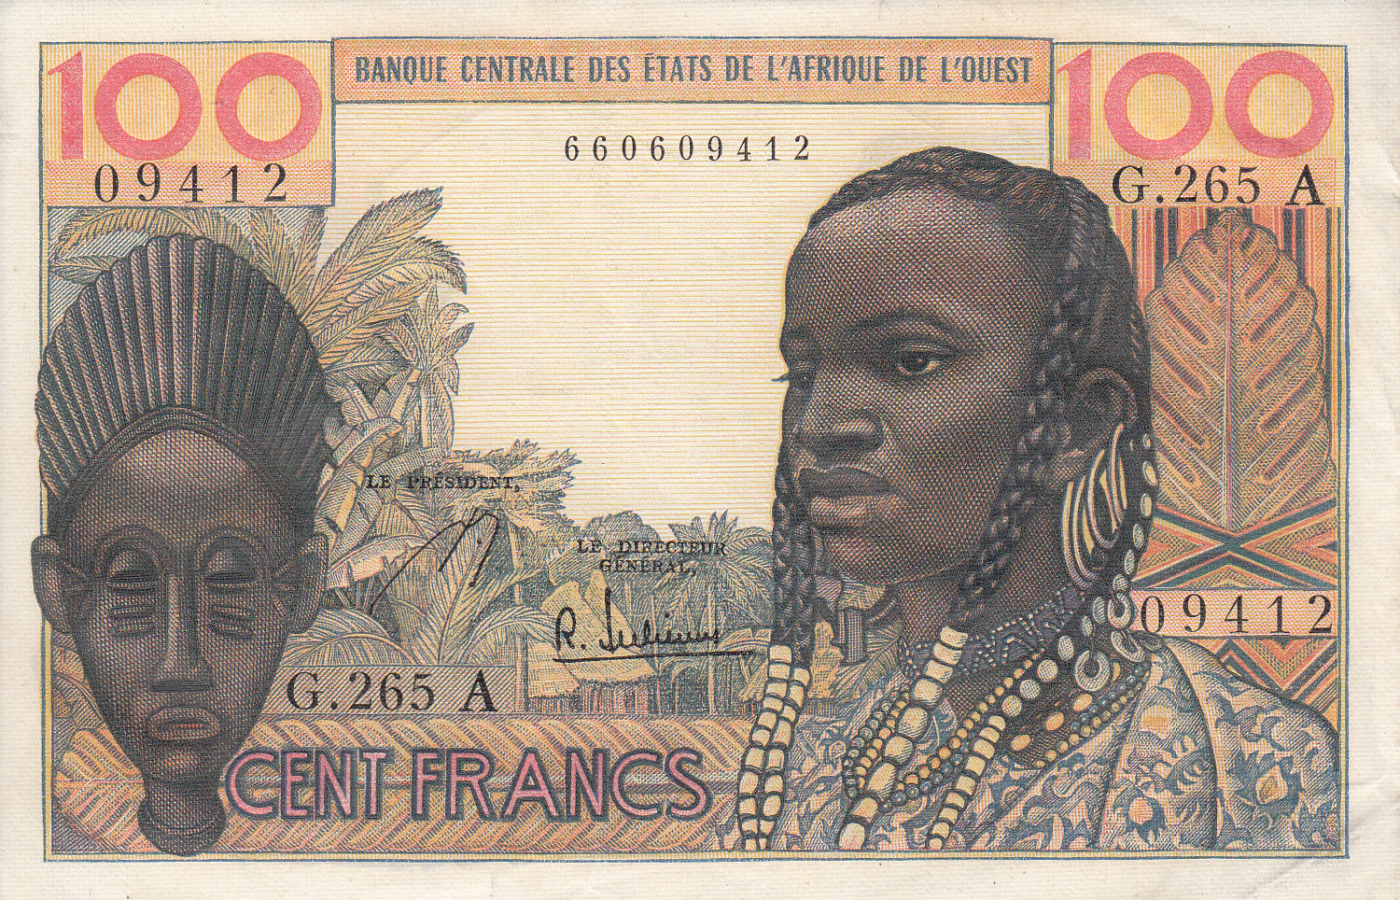 100 Francs ND, Cote D'Ivoire (Ivory Coast) (A) 19611965